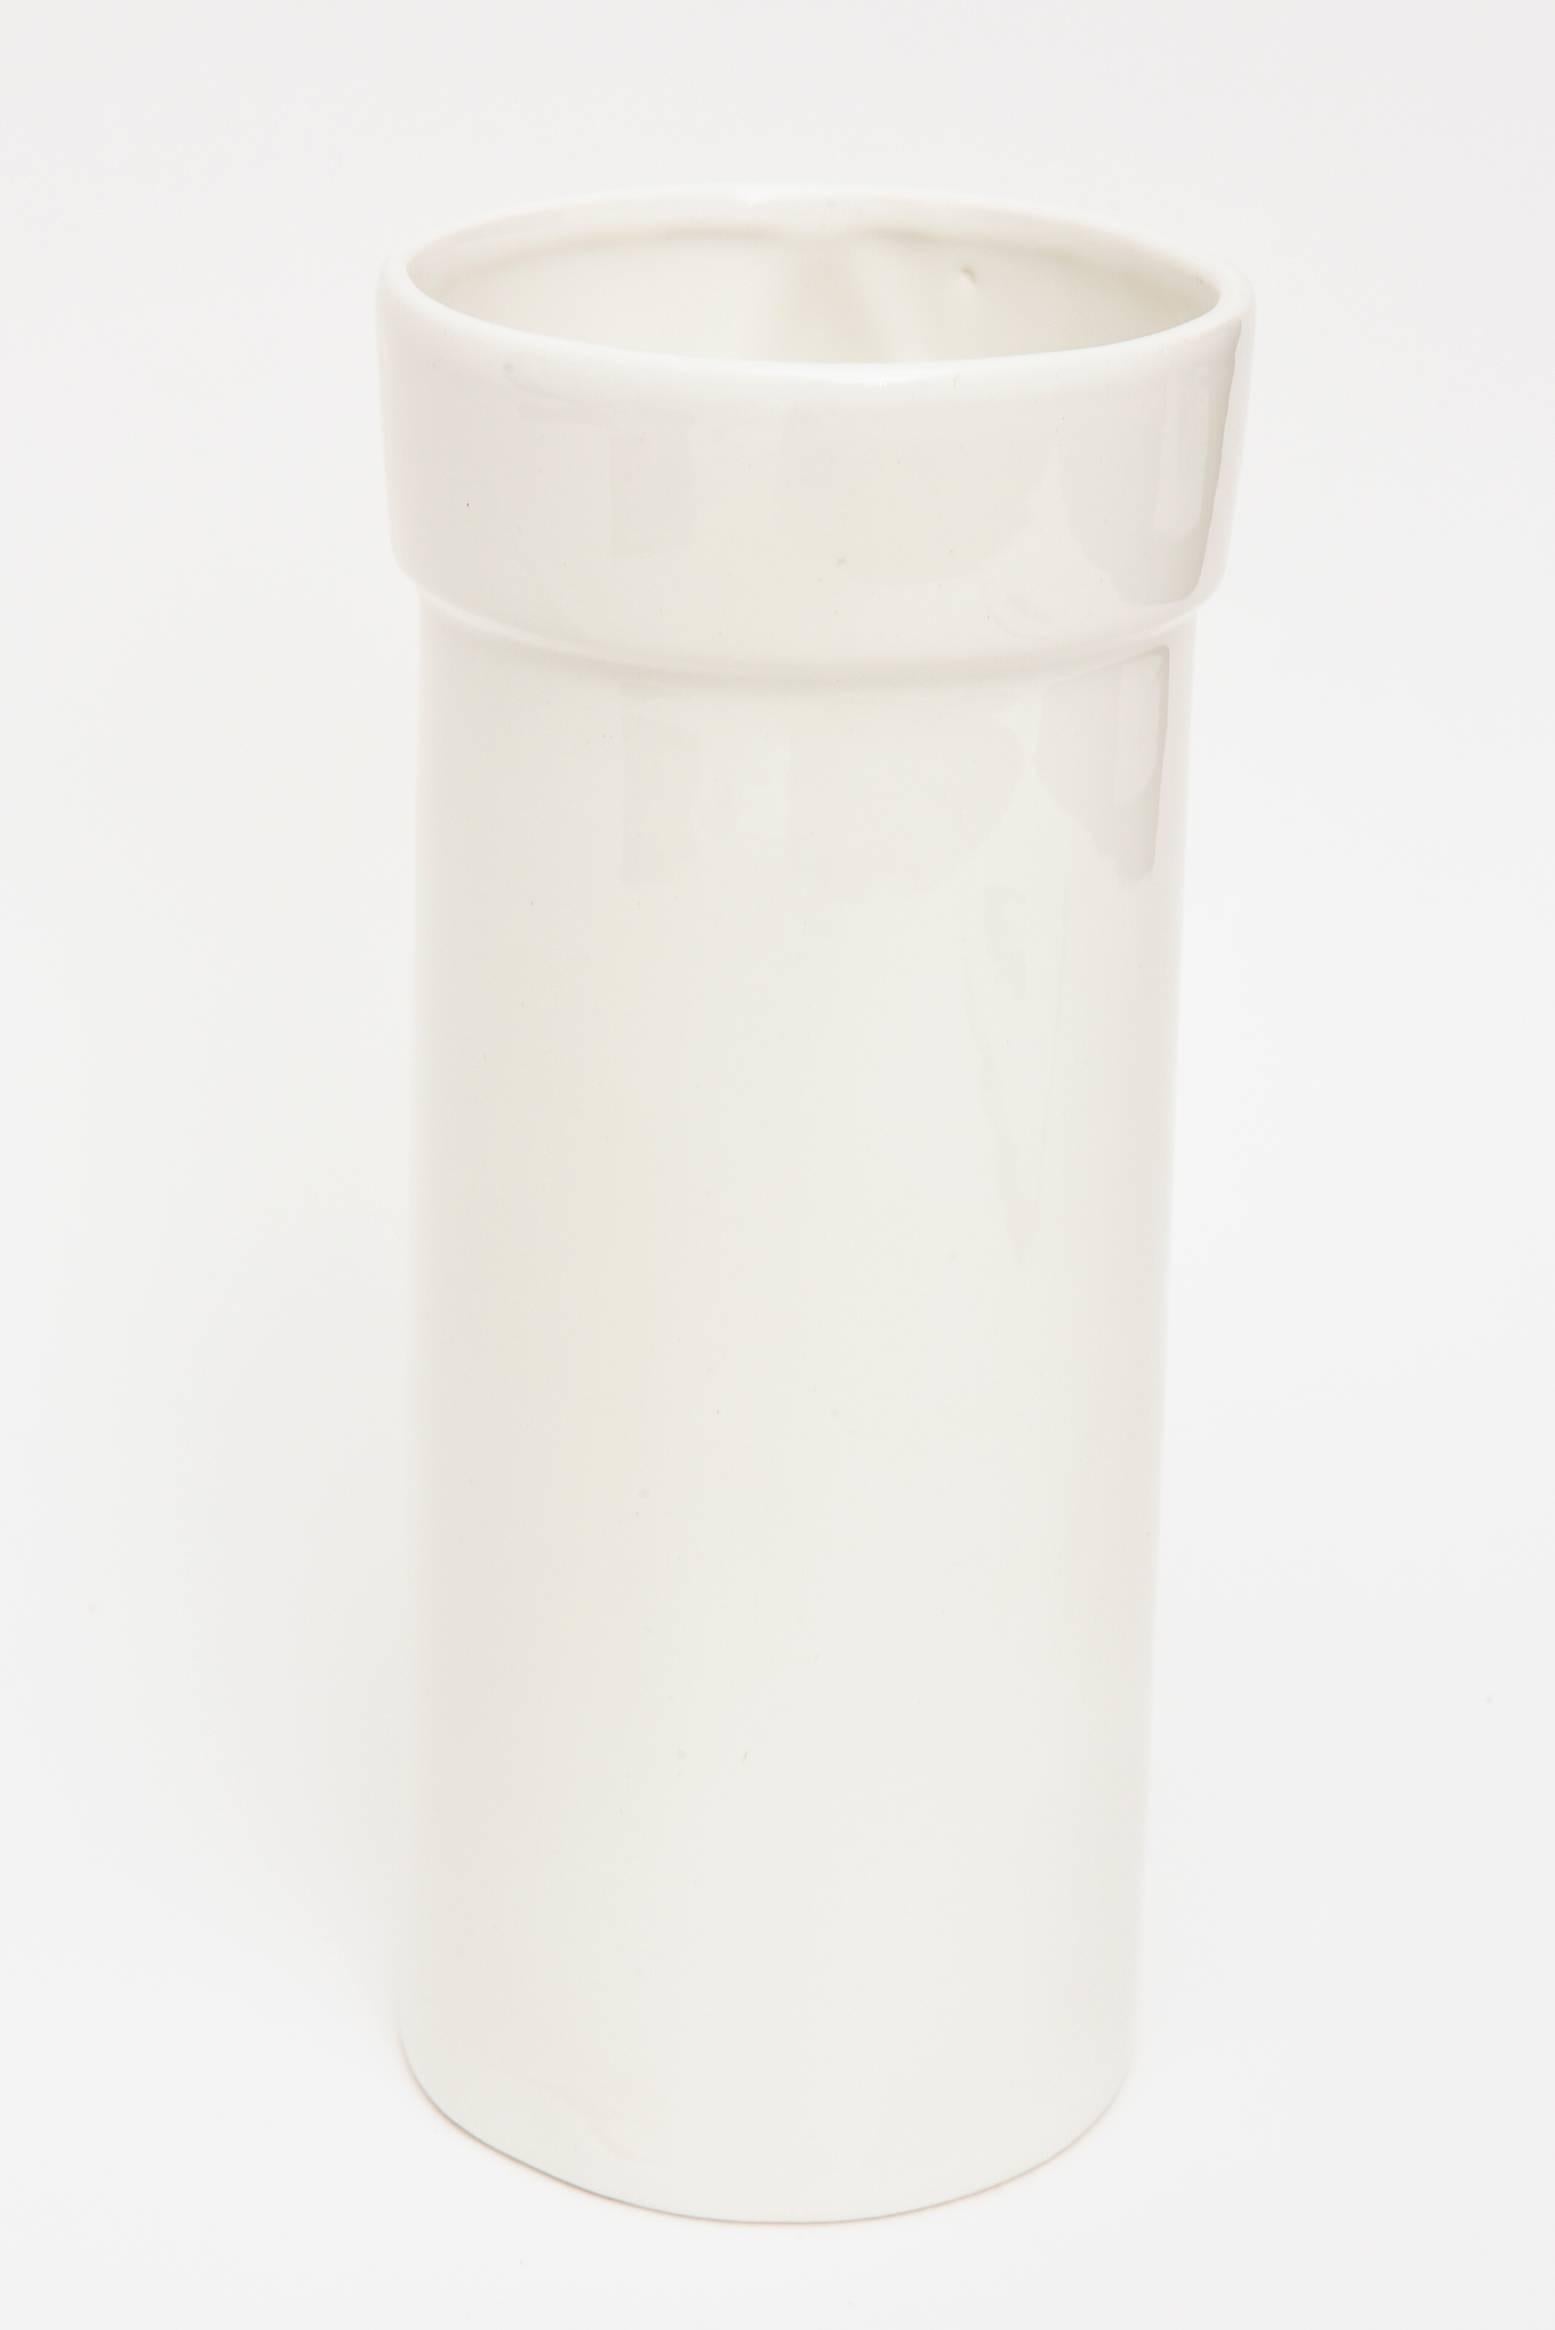 Late 20th Century Raymor Pop Art Off-White Gazed Ceramic Vase Italian Vintage For Sale